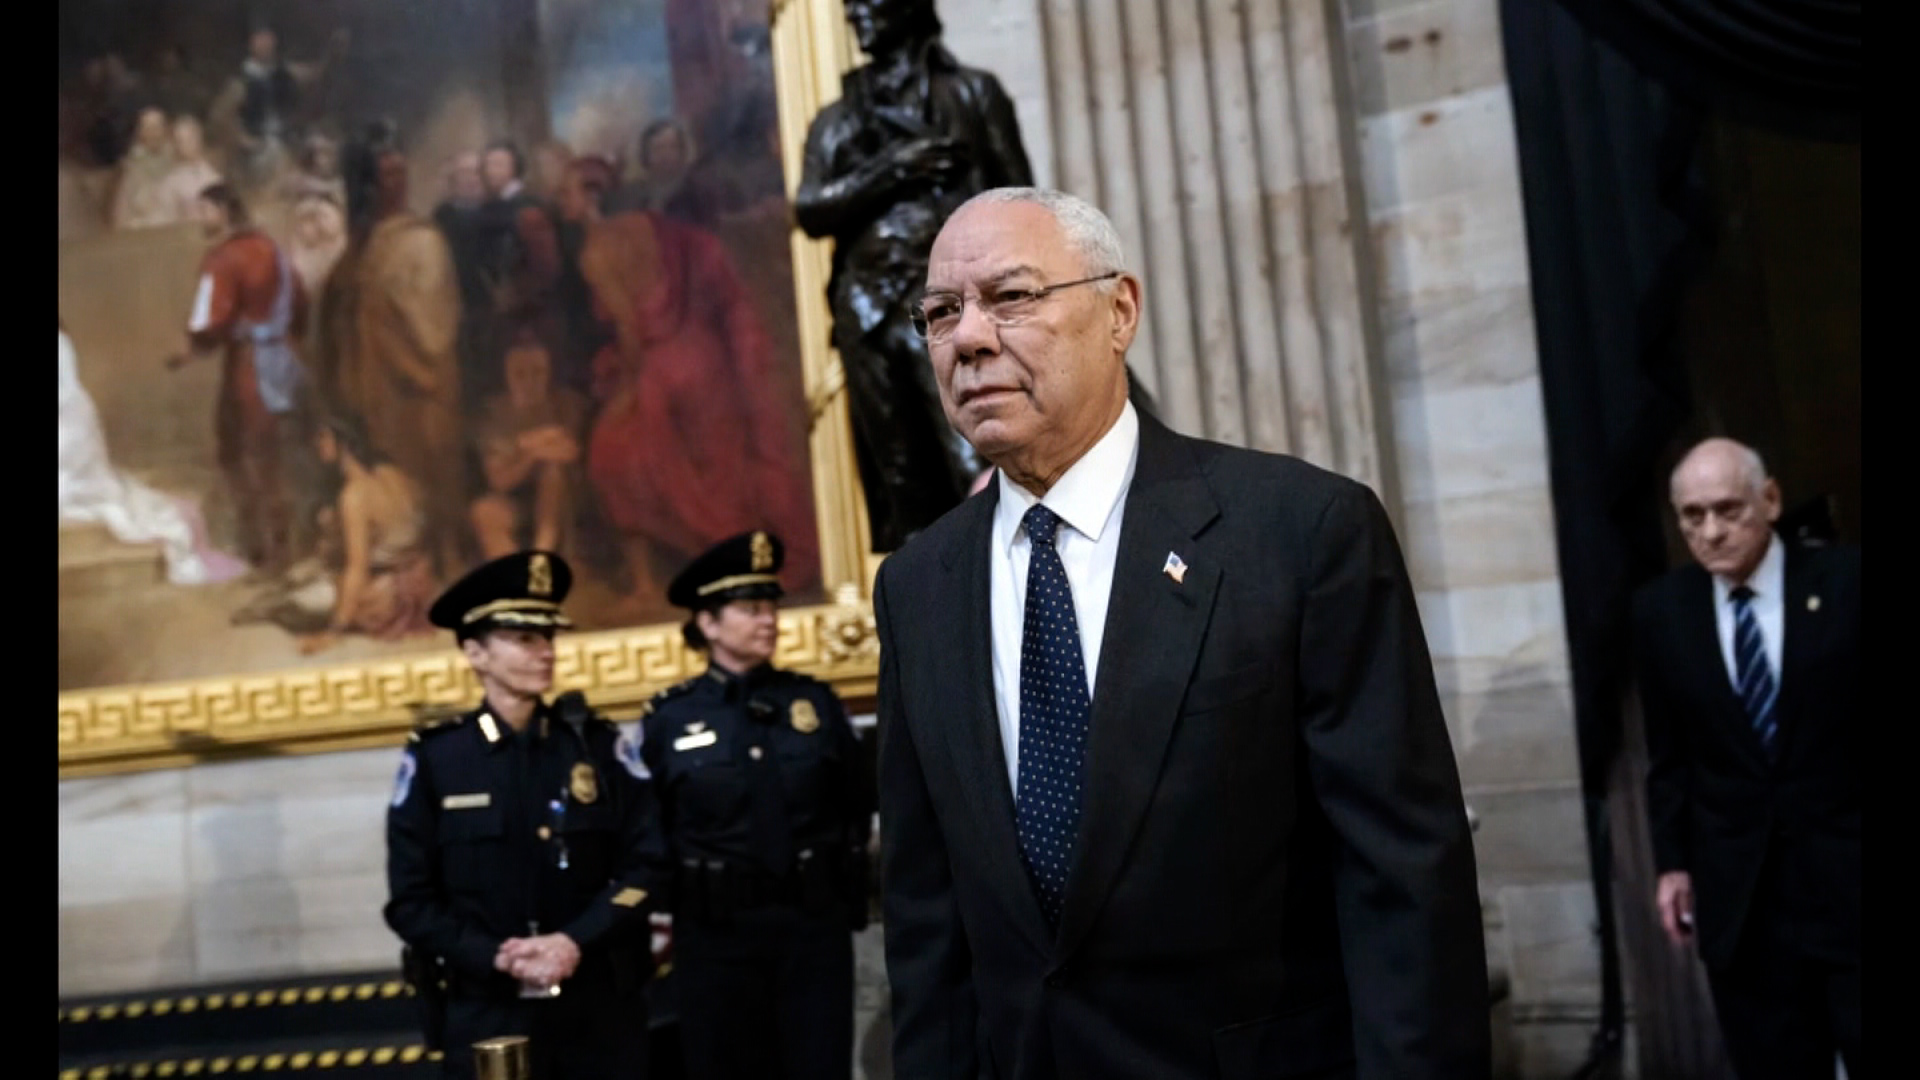 Muere Colin Powell a los 84 años por covid-19